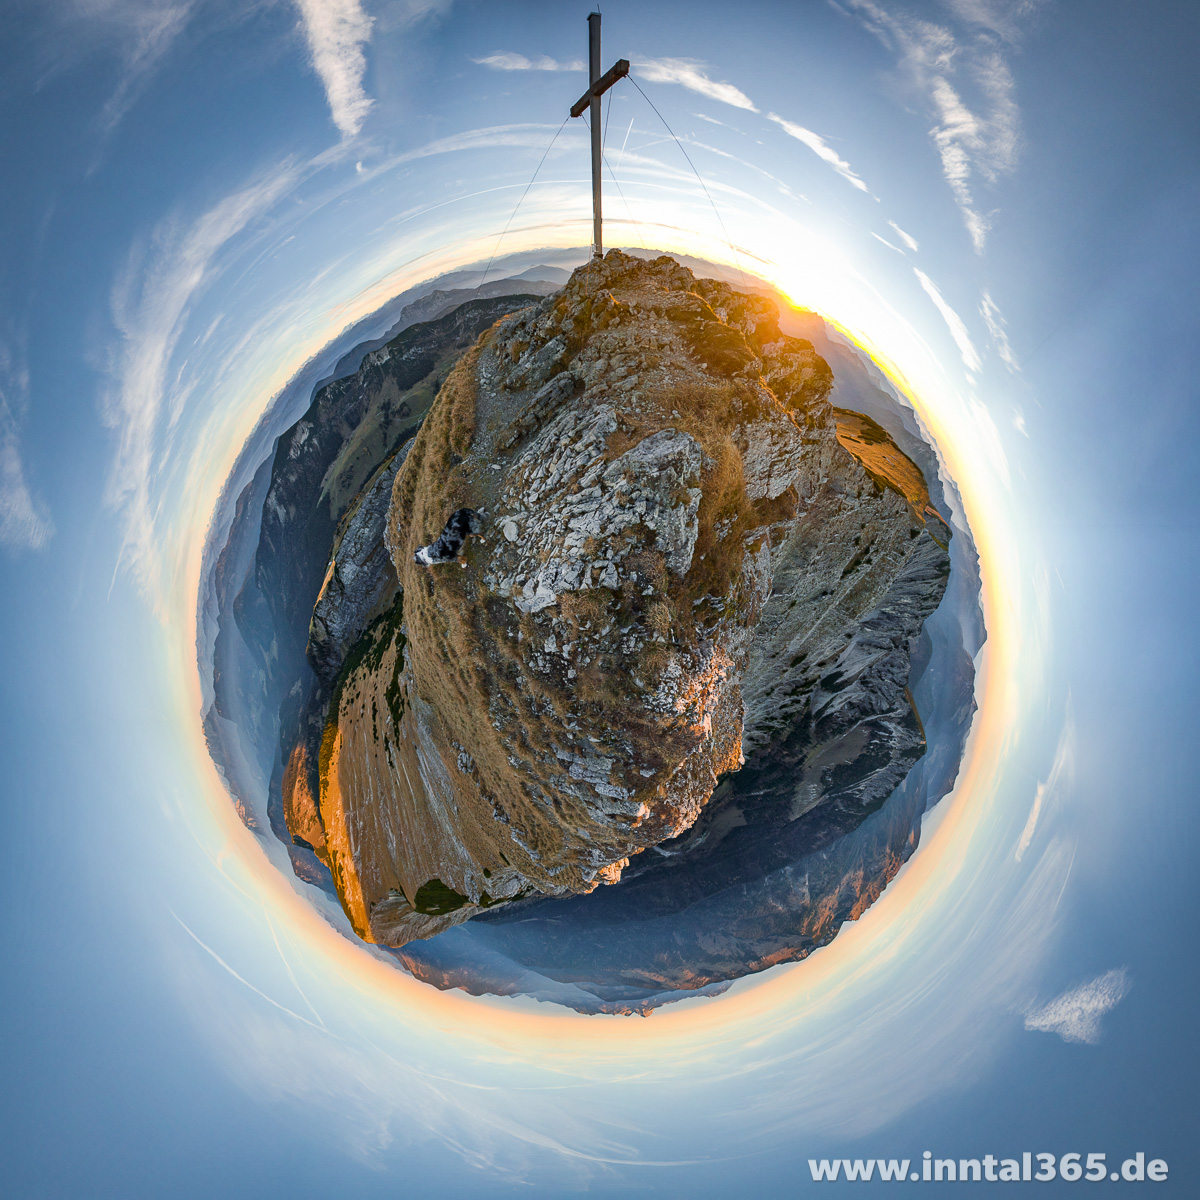 13.11.2015 - Hinteres Sonnwendjoch Panorama-Projektion kleiner Planet